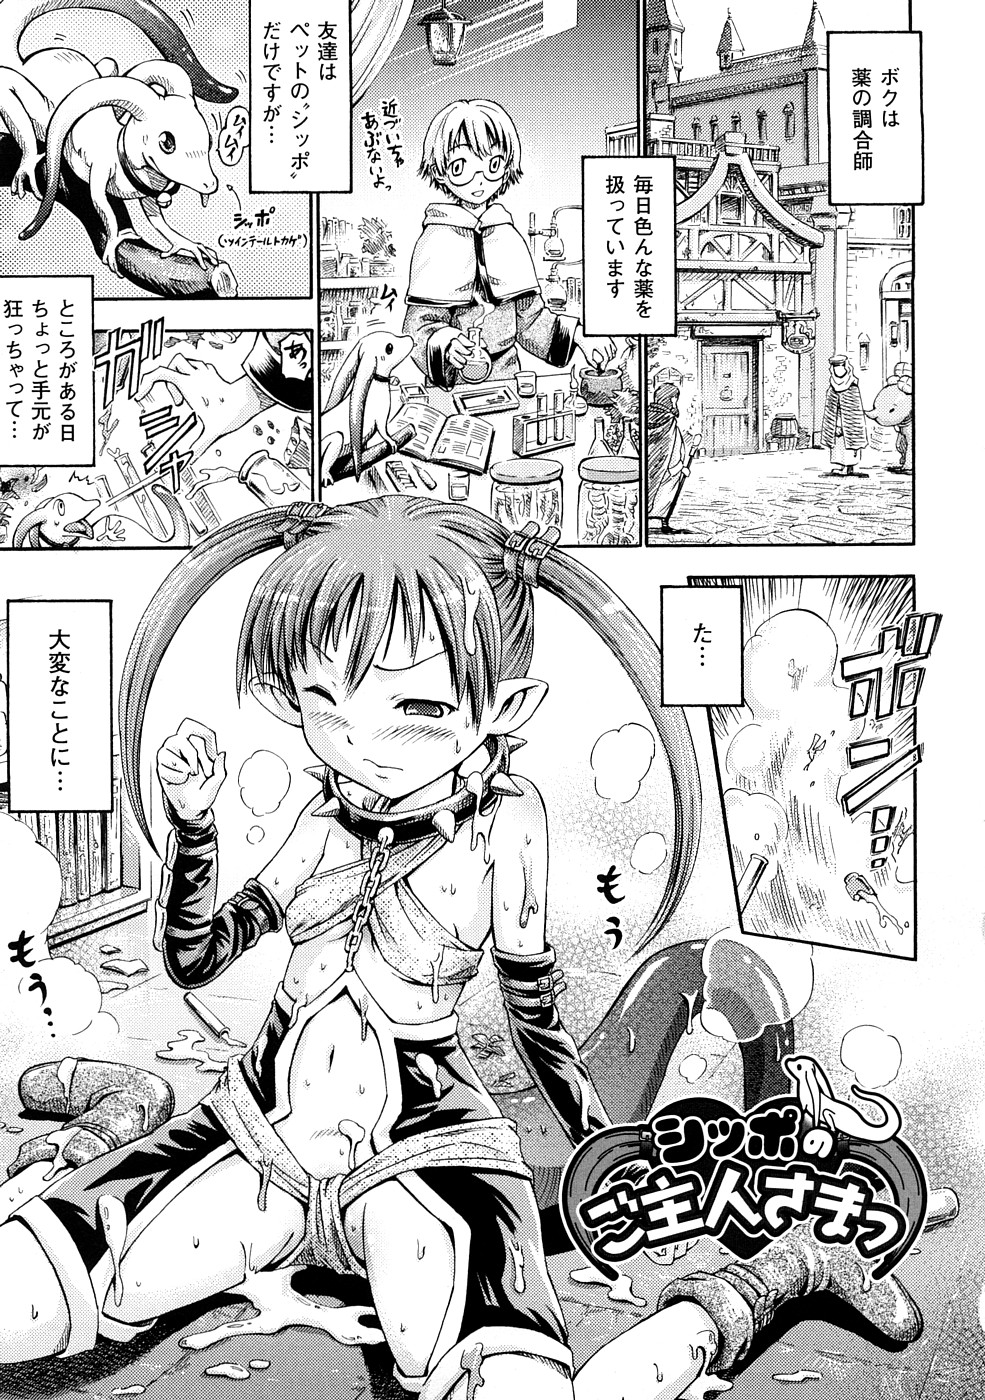 [Horitomo] Fairy Tales page 28 full